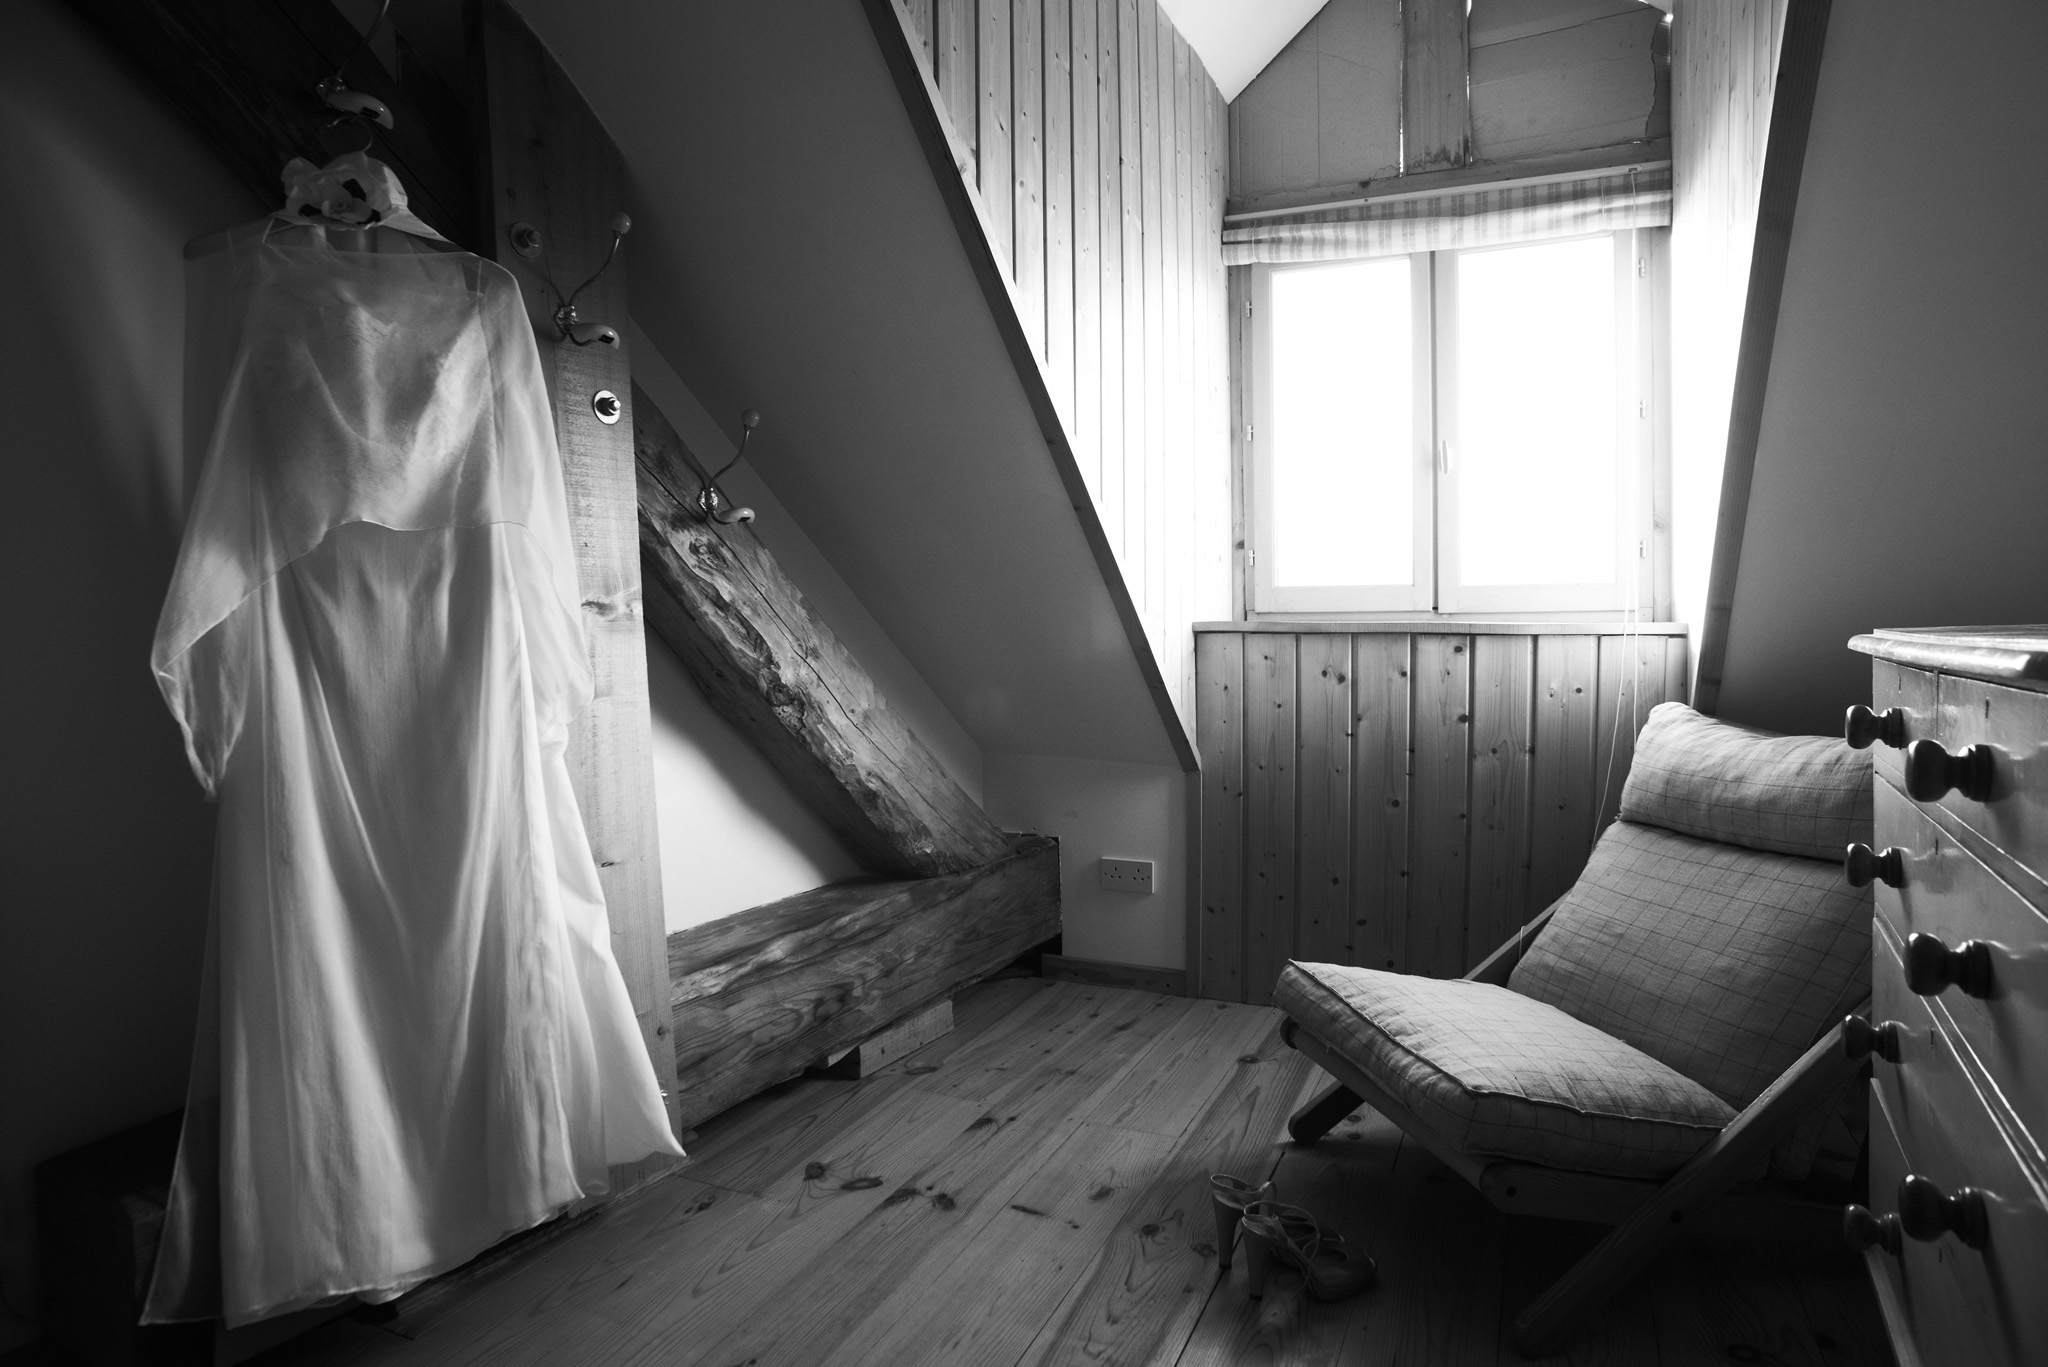 photographie de mariage preparatifs nantes rennes vannes angers - rudy burbant